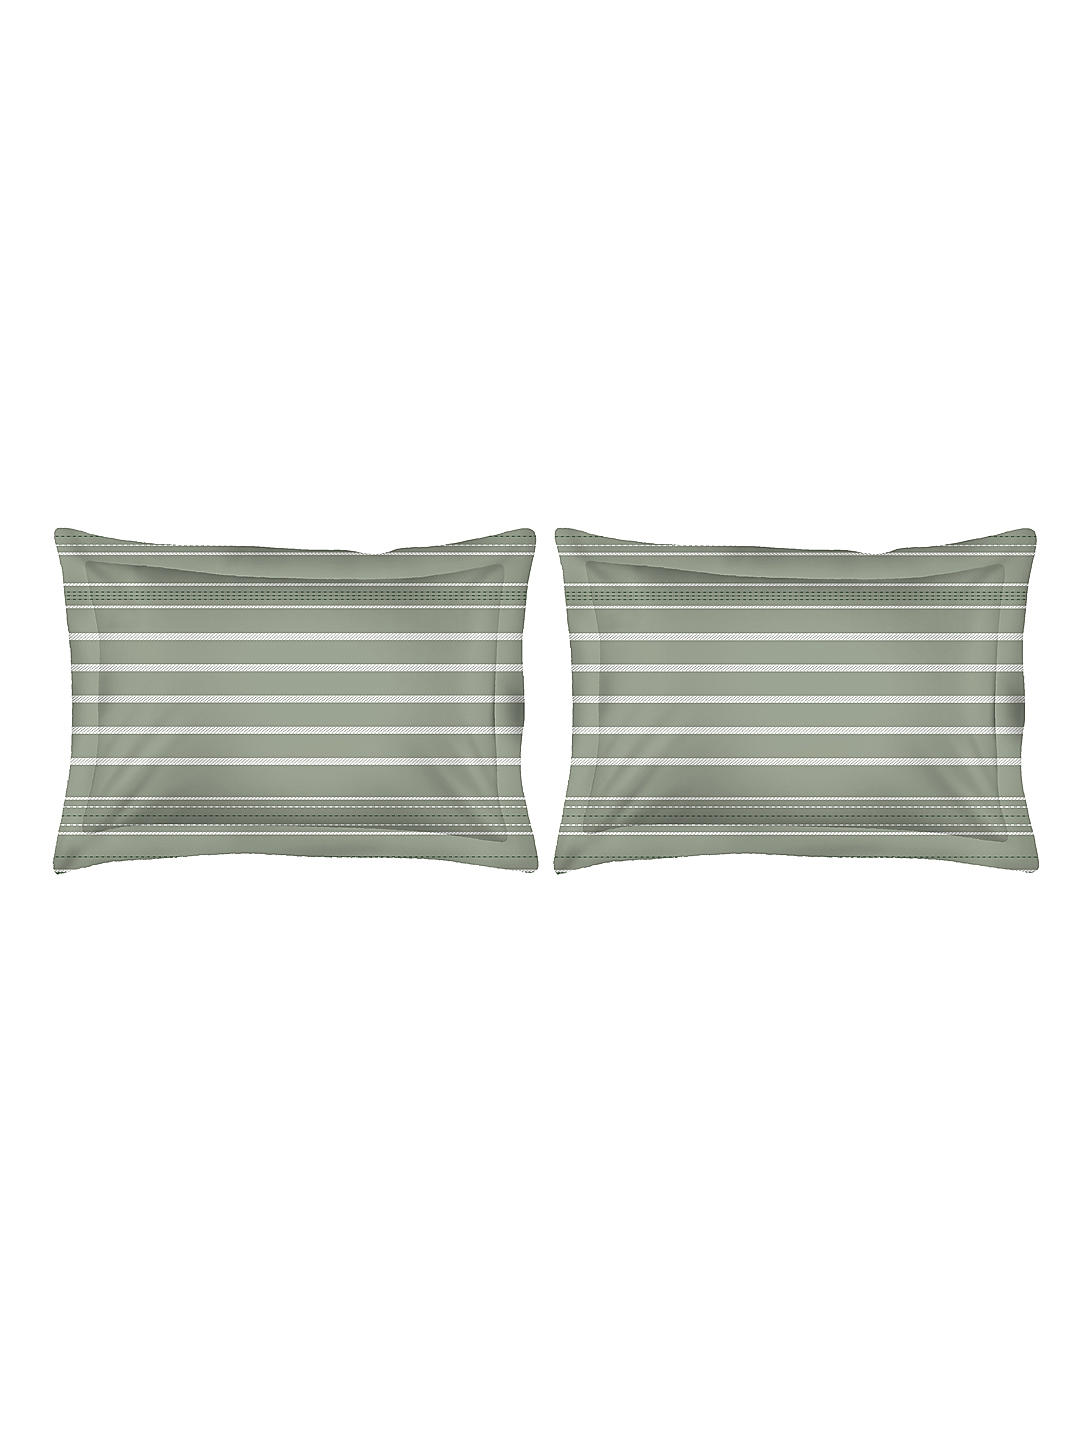 Iris Gaze-1 100% cotton Fine Green Colored Stripes Print King Bed Sheet Set